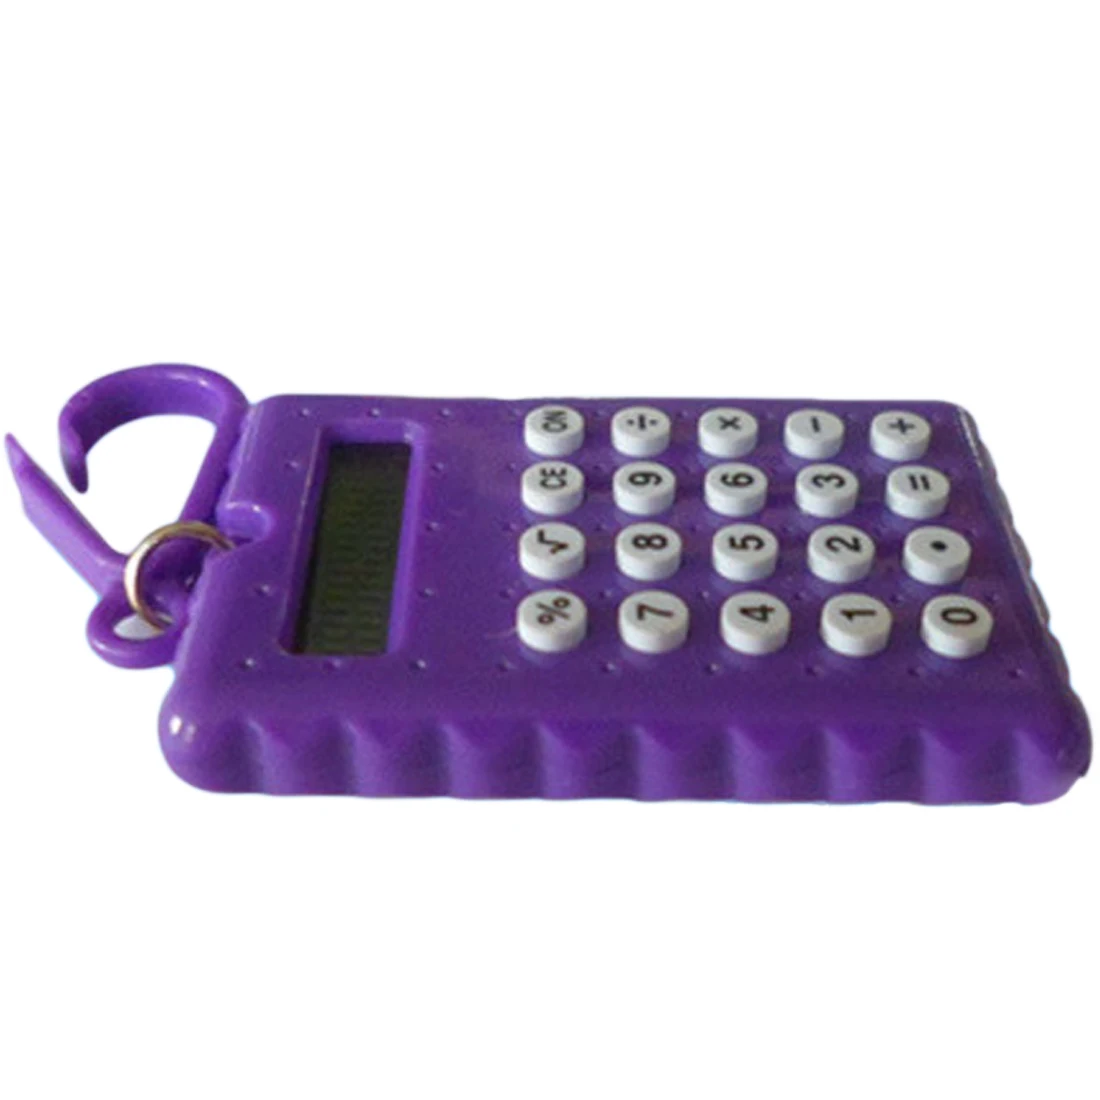 Мини-электронный калькулятор для студентов, яркие цвета, калькулятор, офисные принадлежности, подарок, супер маленький электронный калькулятор laskimet